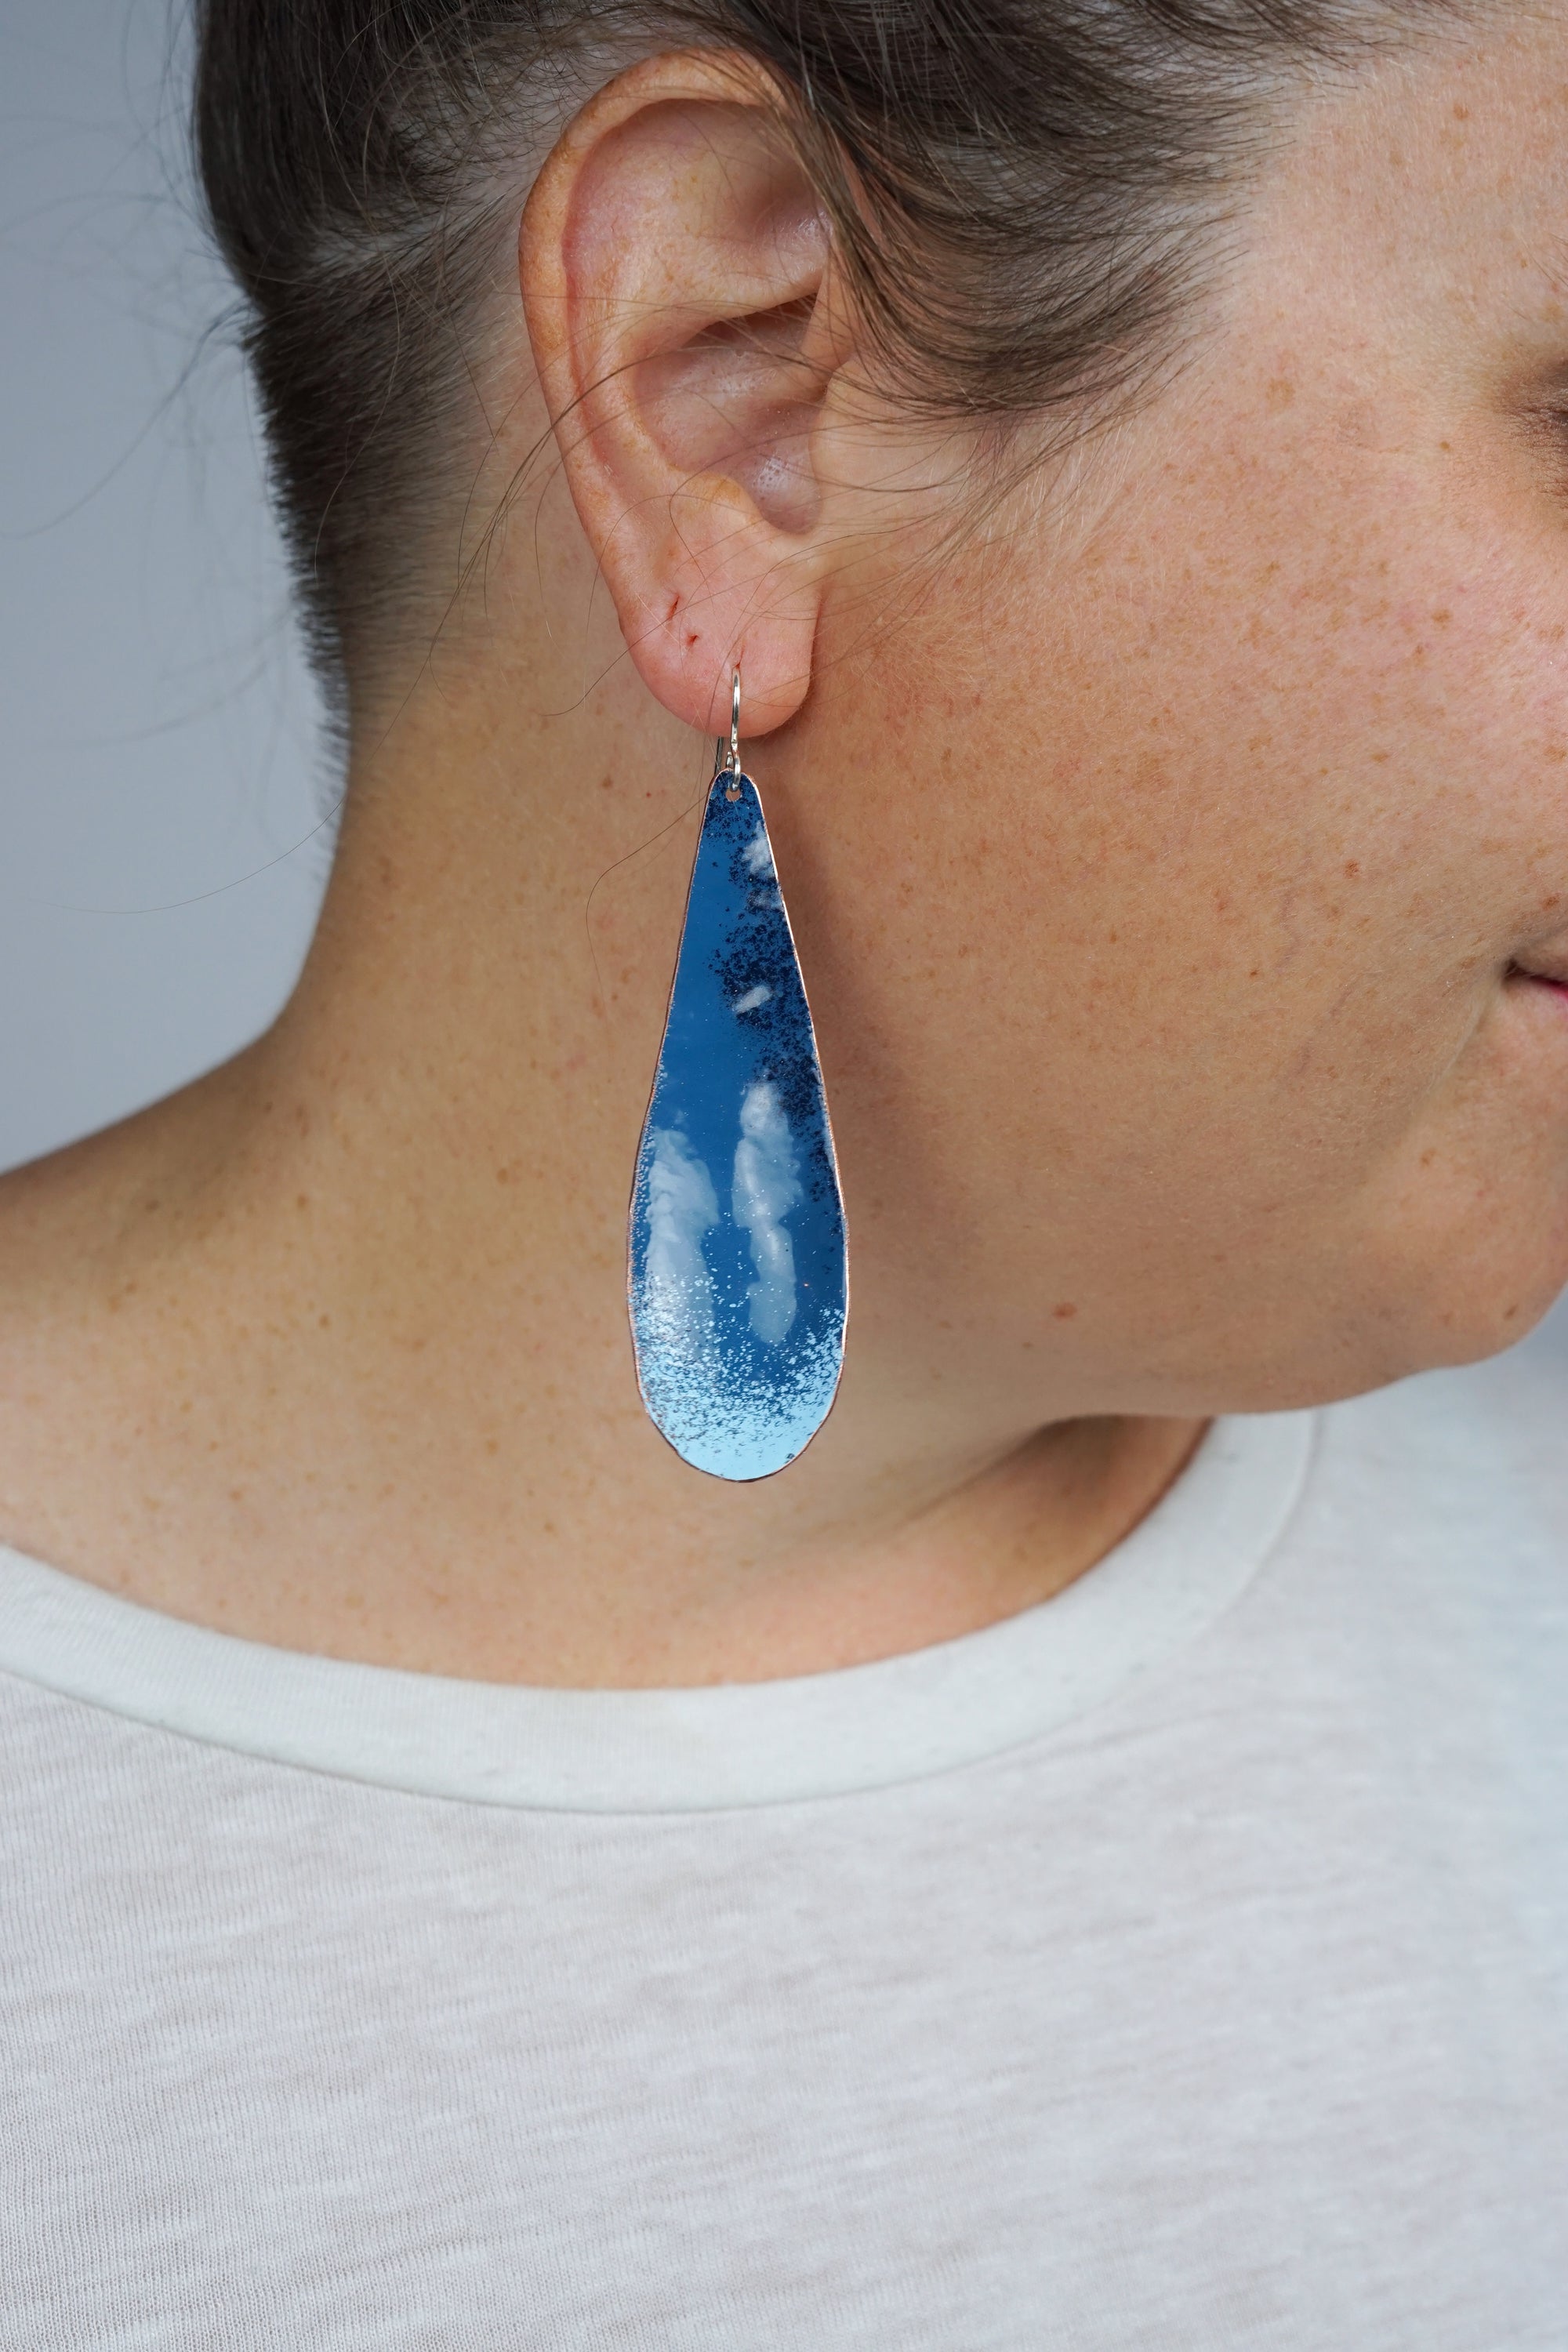 Long Chroma Earrings in Azure Blue and Light Blue